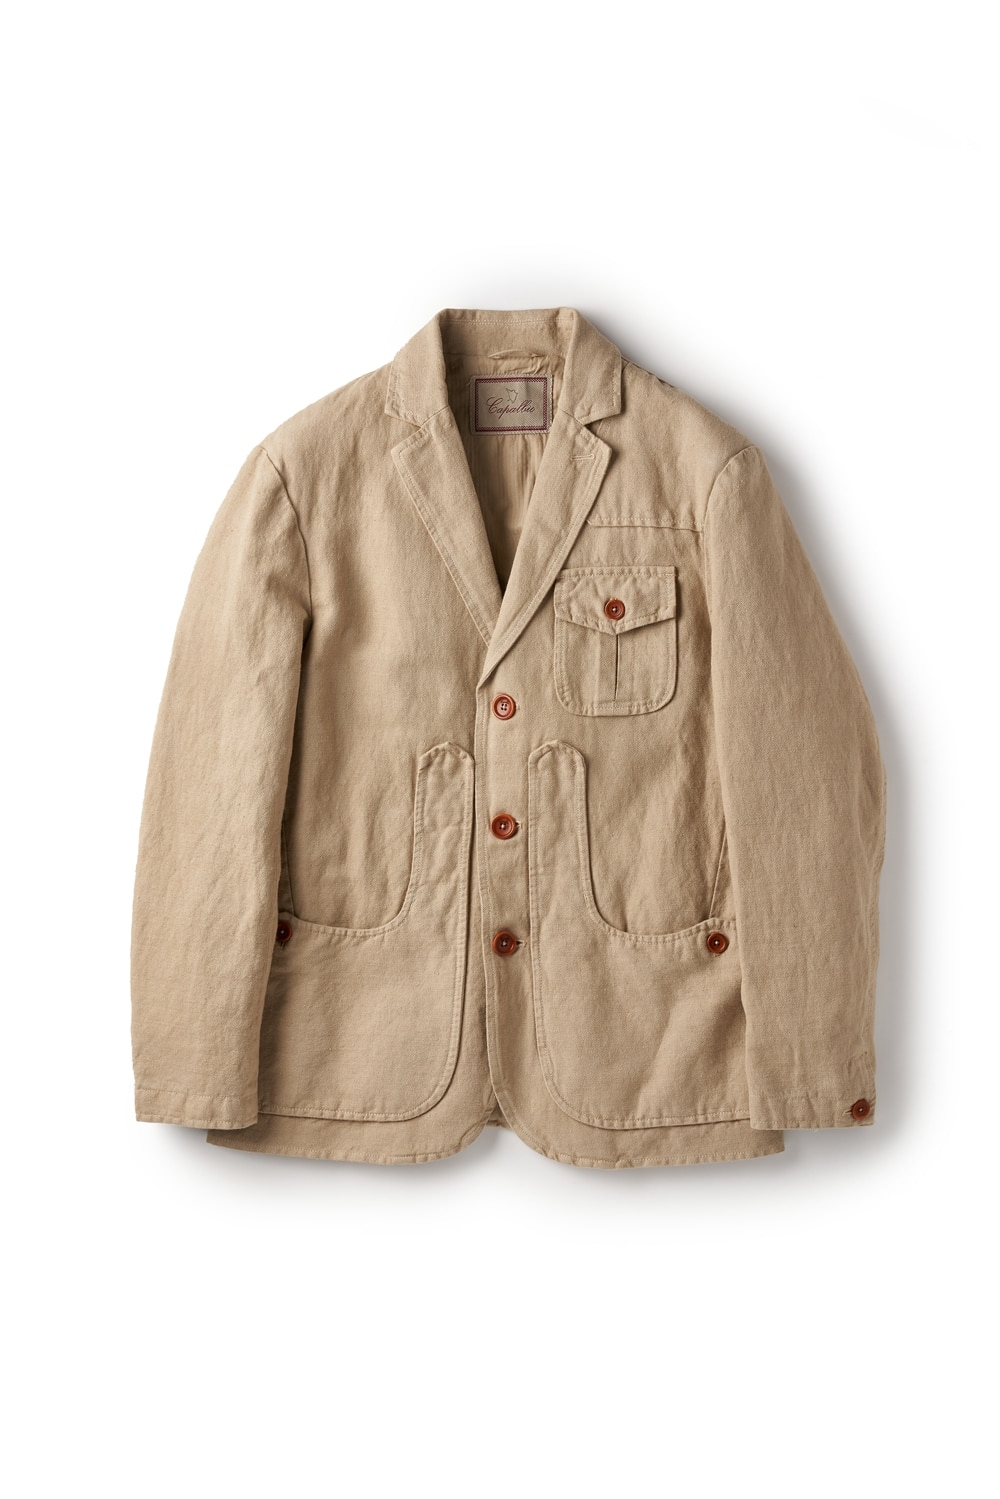 Cotton-linen jacket beigeCapalbio(카팔비오)